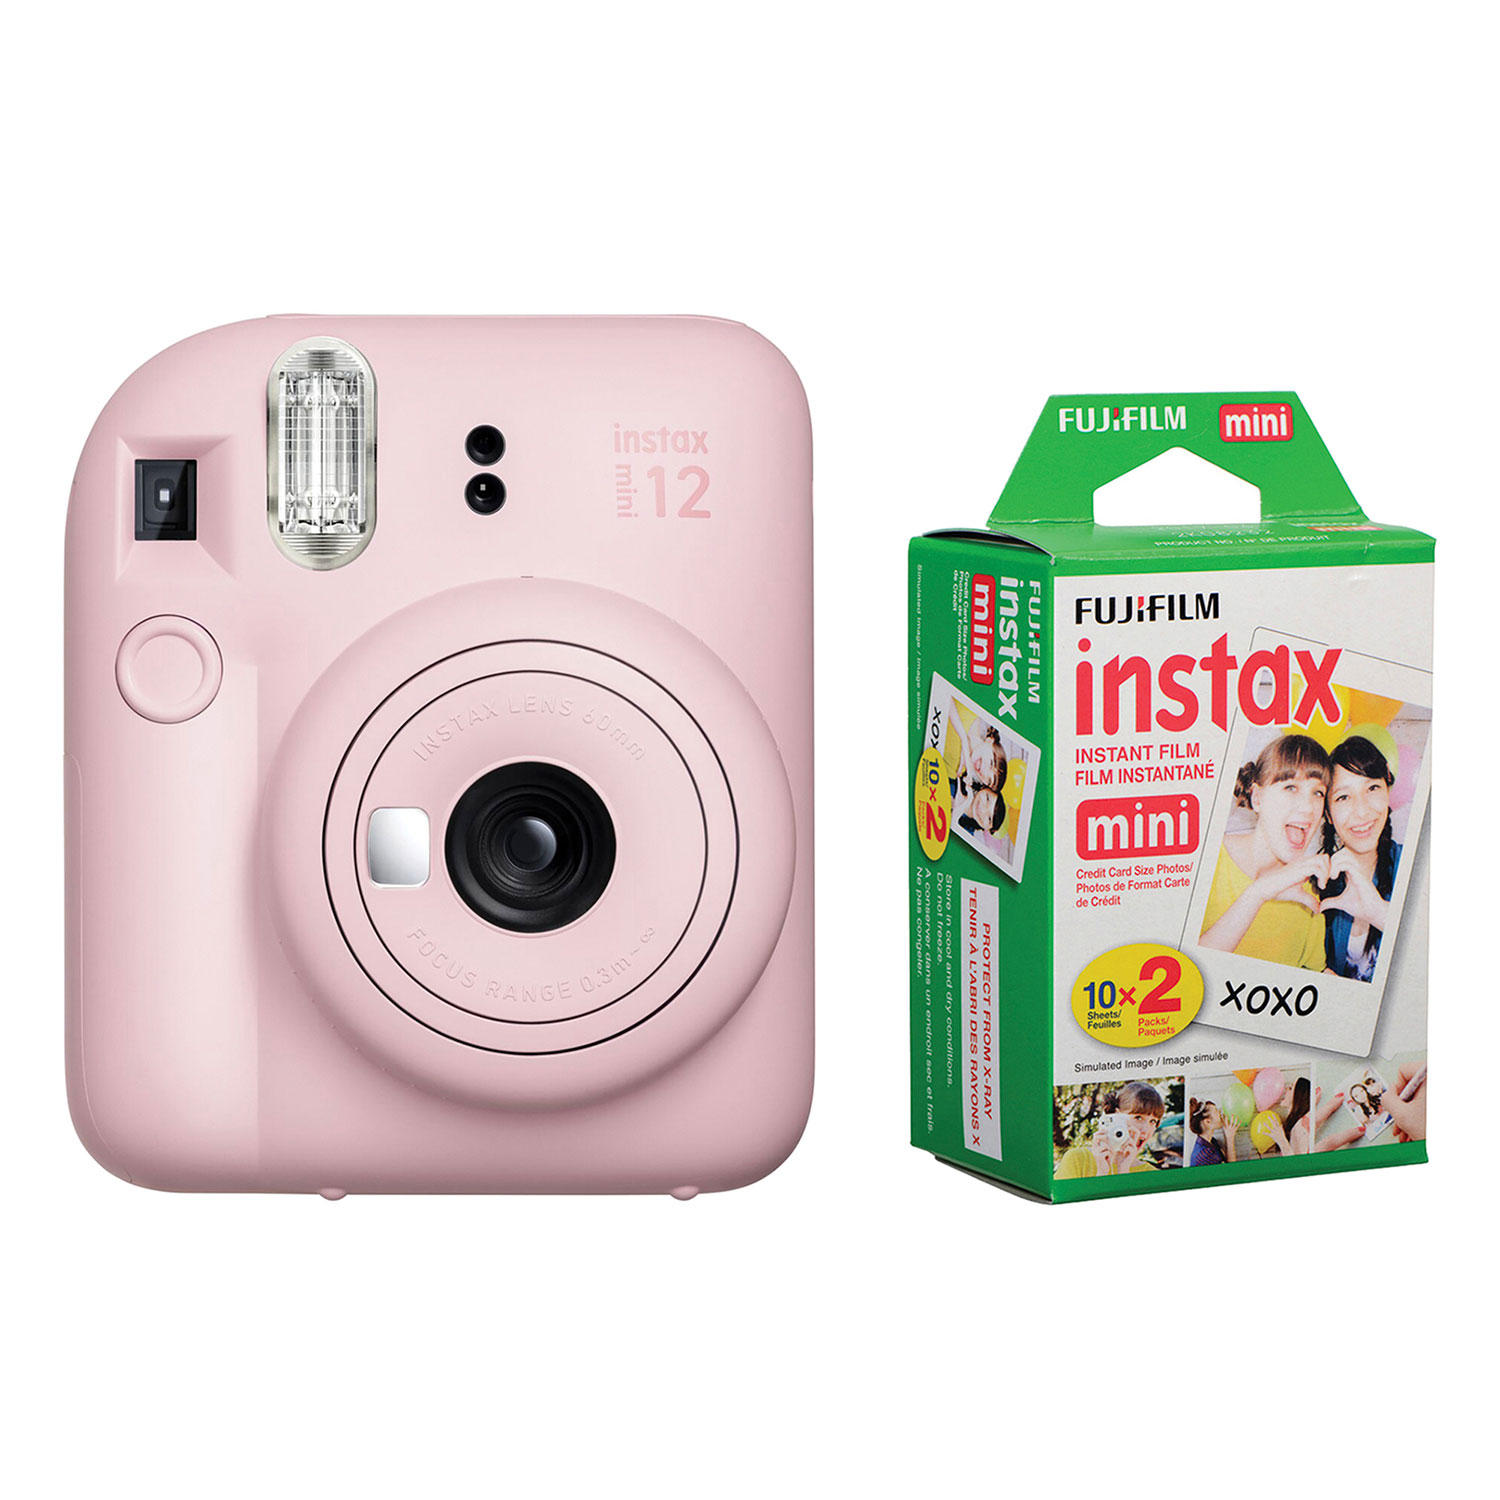 FUJIFILM Instax Mini 12 Instant Film Camera (Blossom Pink) & Instax mini Film Twin Pack